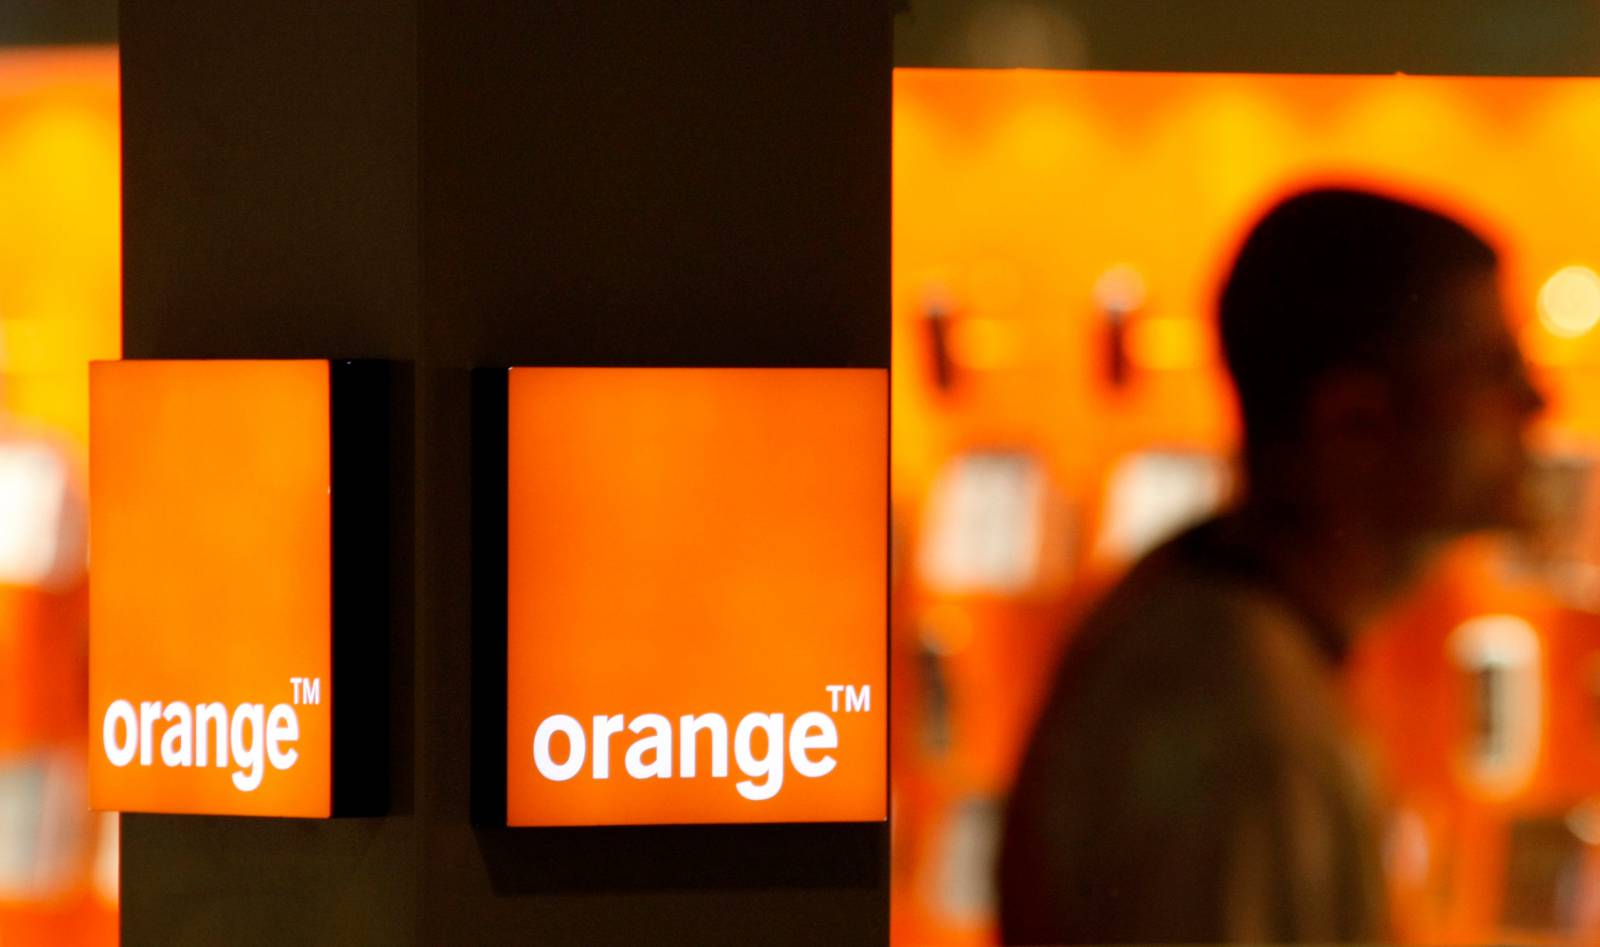 Orange Romania: Promotiile excelente pentru Telefoane din Magazinul Online astazi